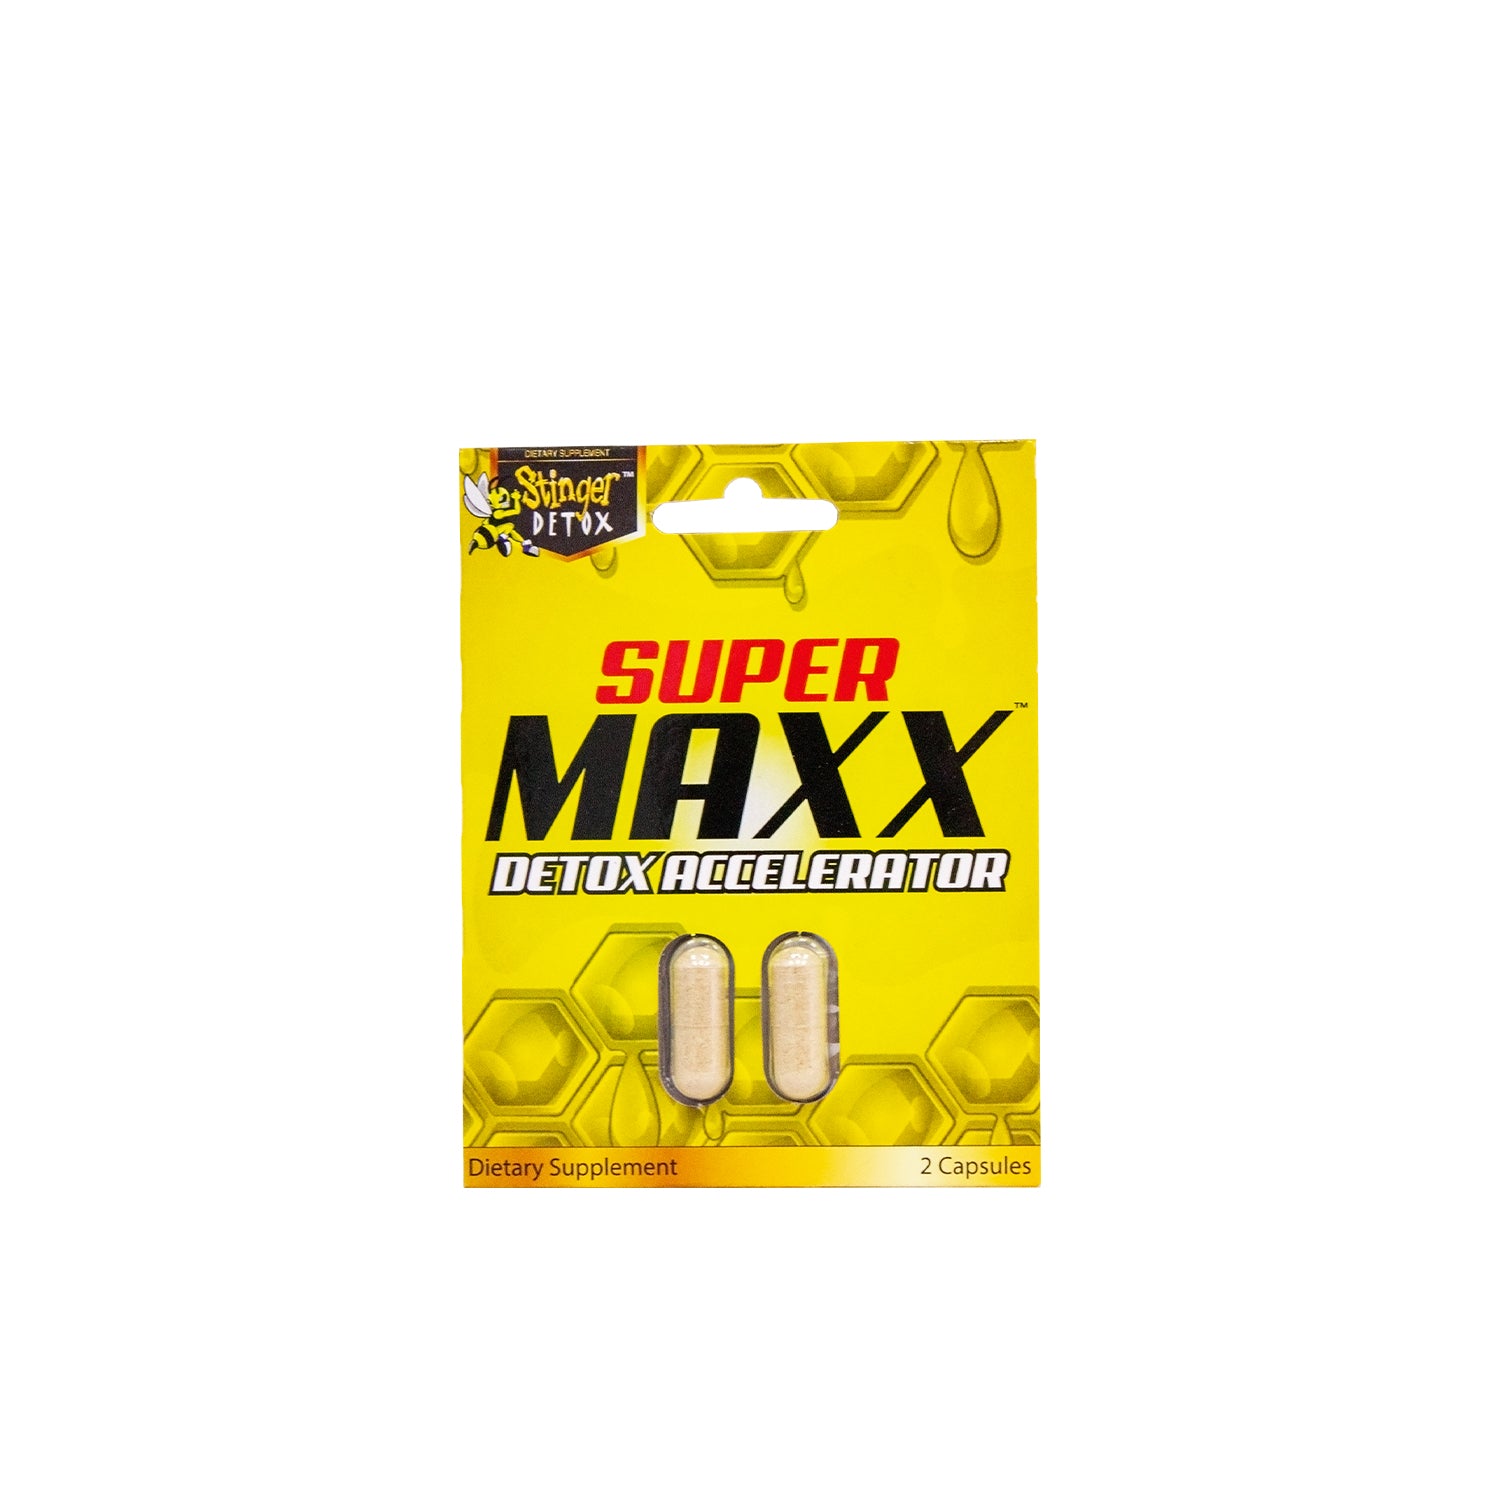 Supermaxx Detox Accelerator | Blister Pack